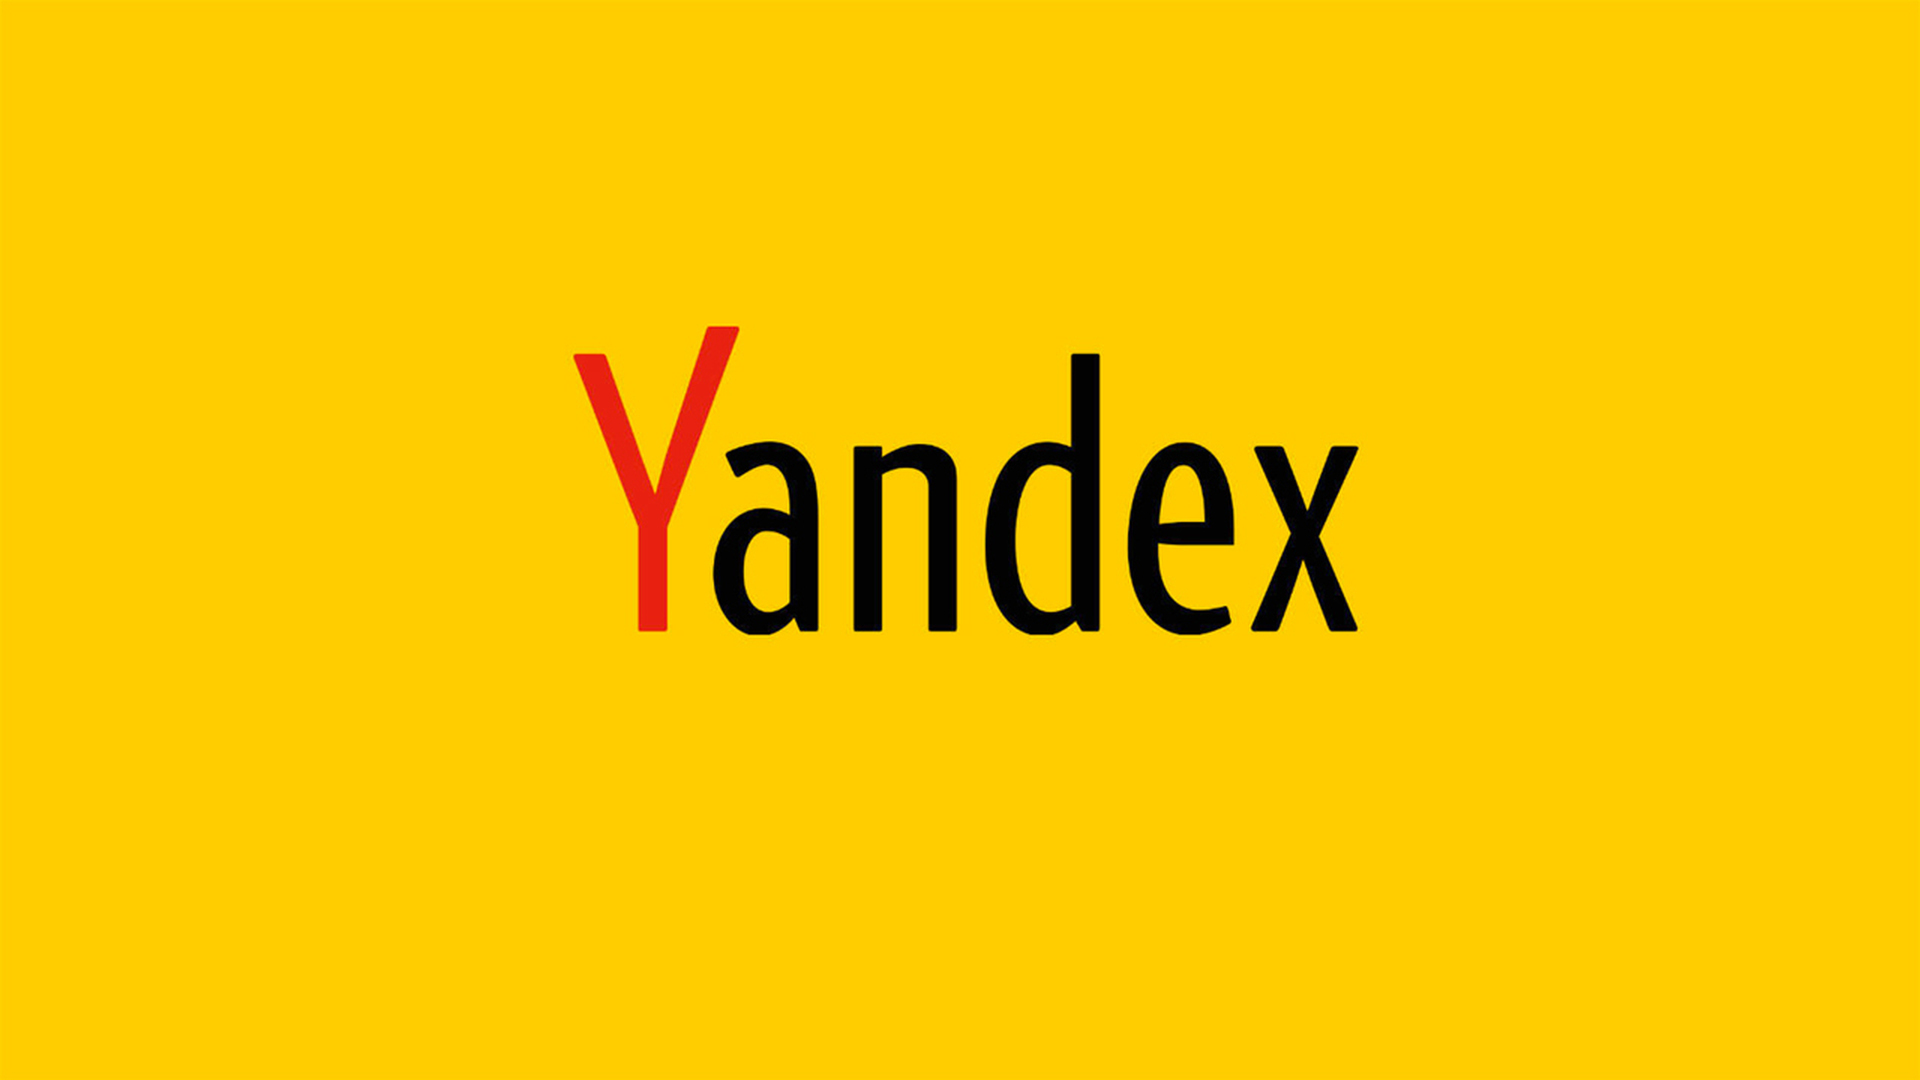 Яндекс реструктурирует сотрудничество Uber в сделке стоимостью 1 млрд. долларов. Что это значит для инвесторов